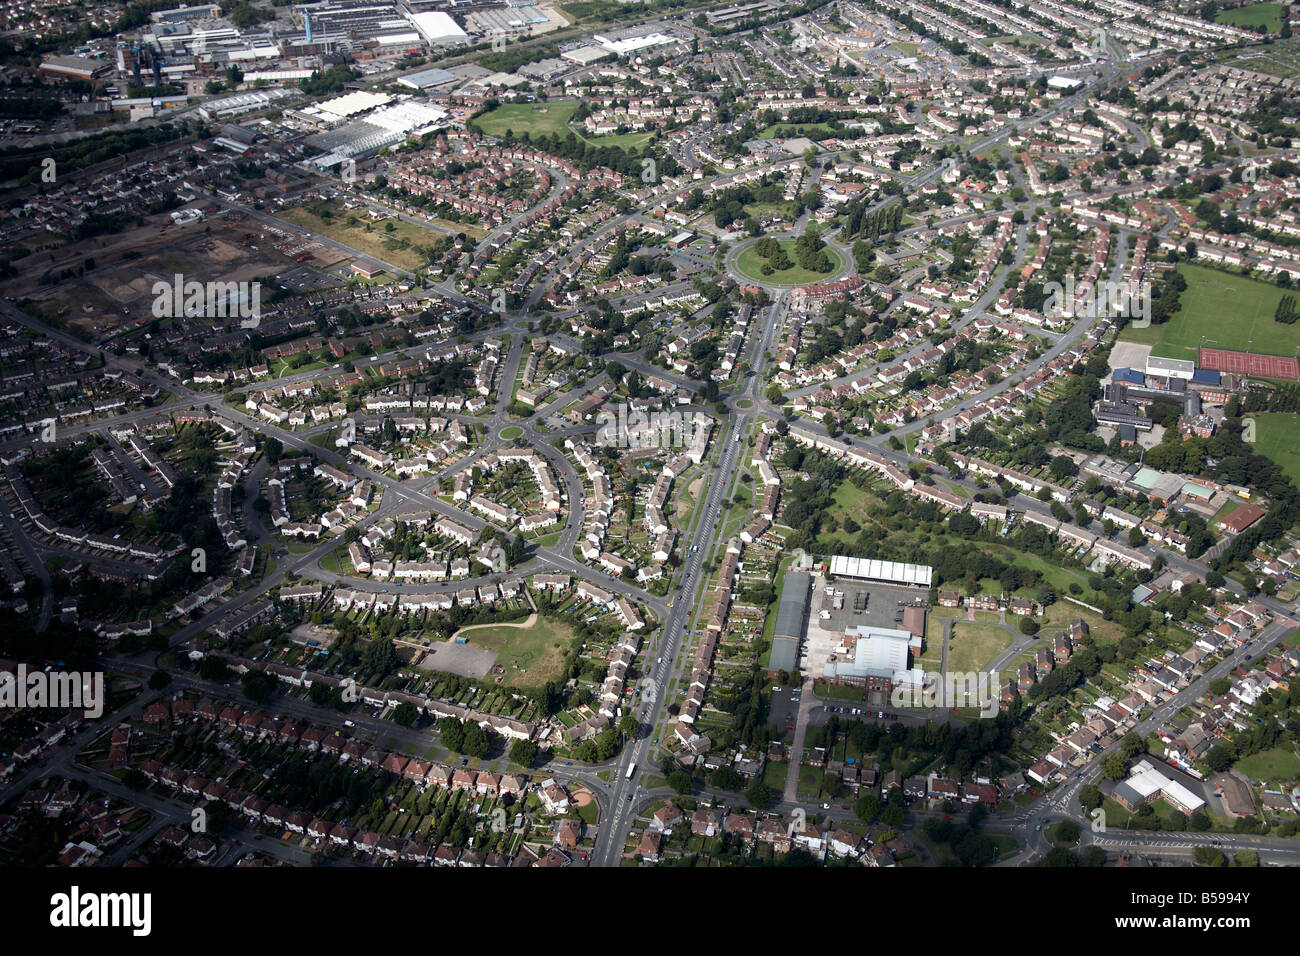 Vue aérienne de la banlieue nord-ouest de 1re 2e 3e Avenue maisons Wolverhampton WV10 Bushbury England UK oblique de haut niveau Banque D'Images